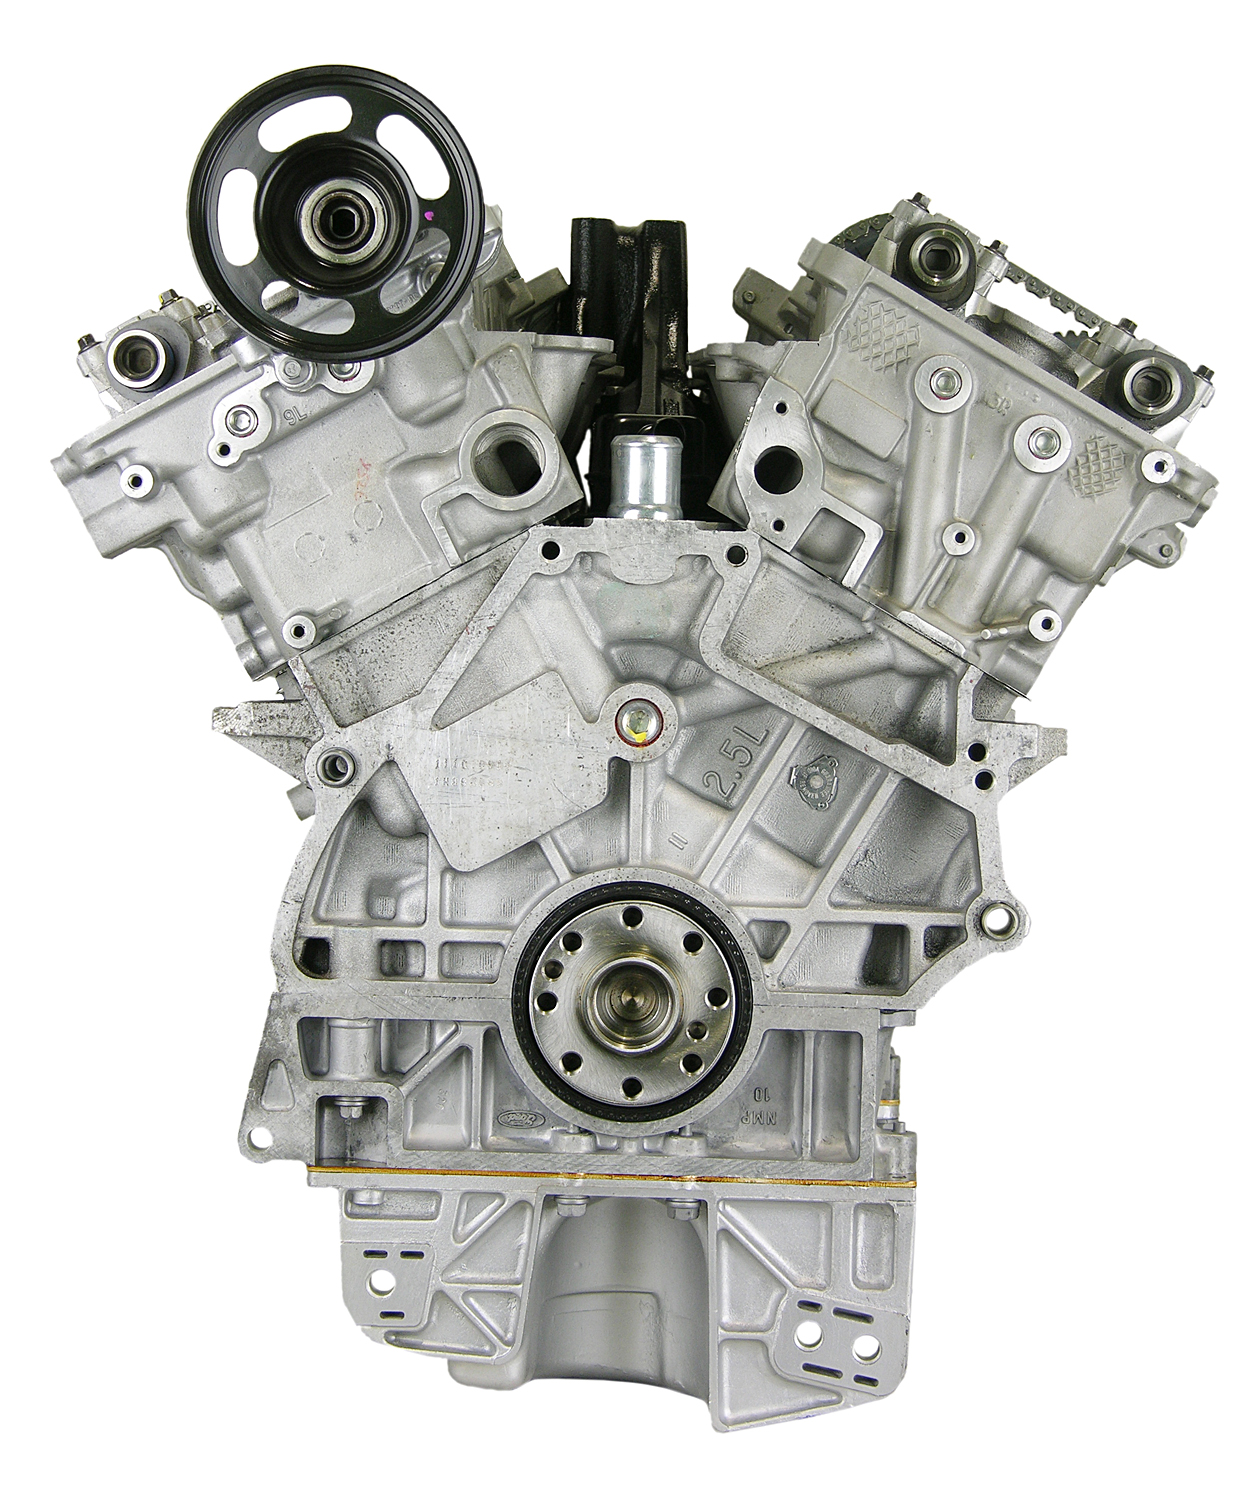 Ford Mercury 2.5L V6 Remanufactured Engine - 1999-2000